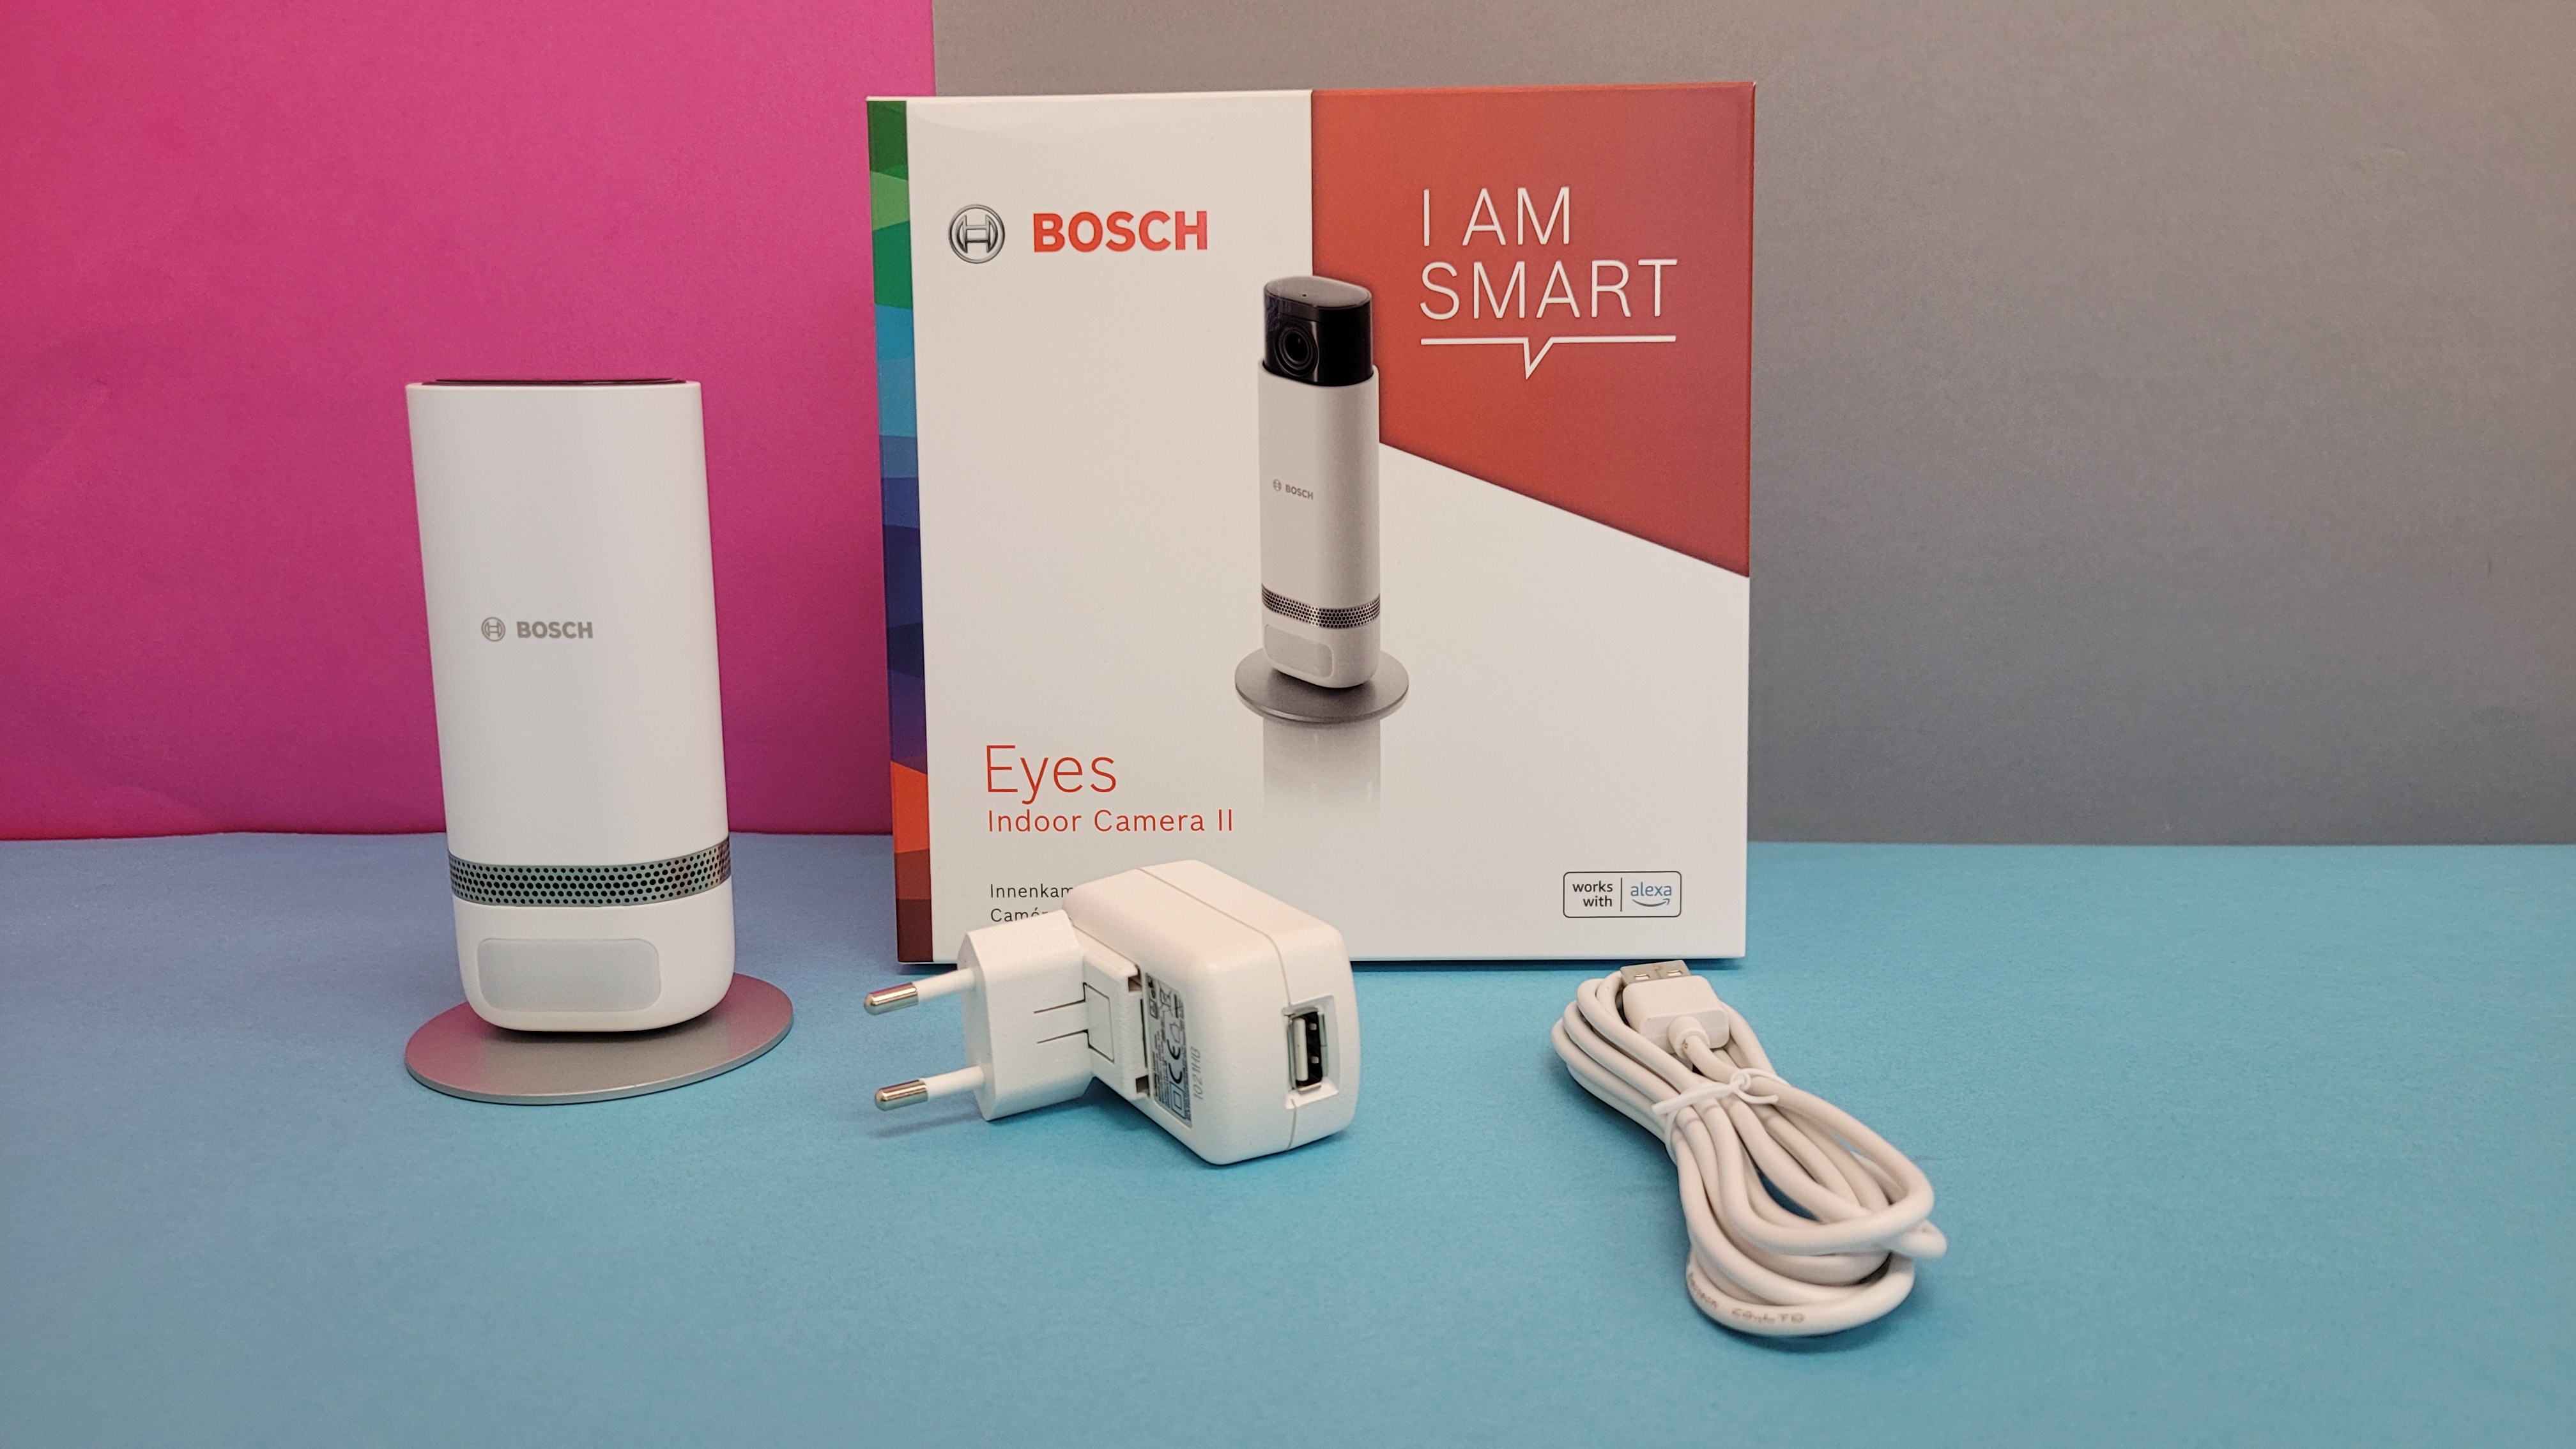 Bosch Eyes Innenkamera II im Test: Weitwinkel-Überwachungskamera mit Alarm  | TechStage